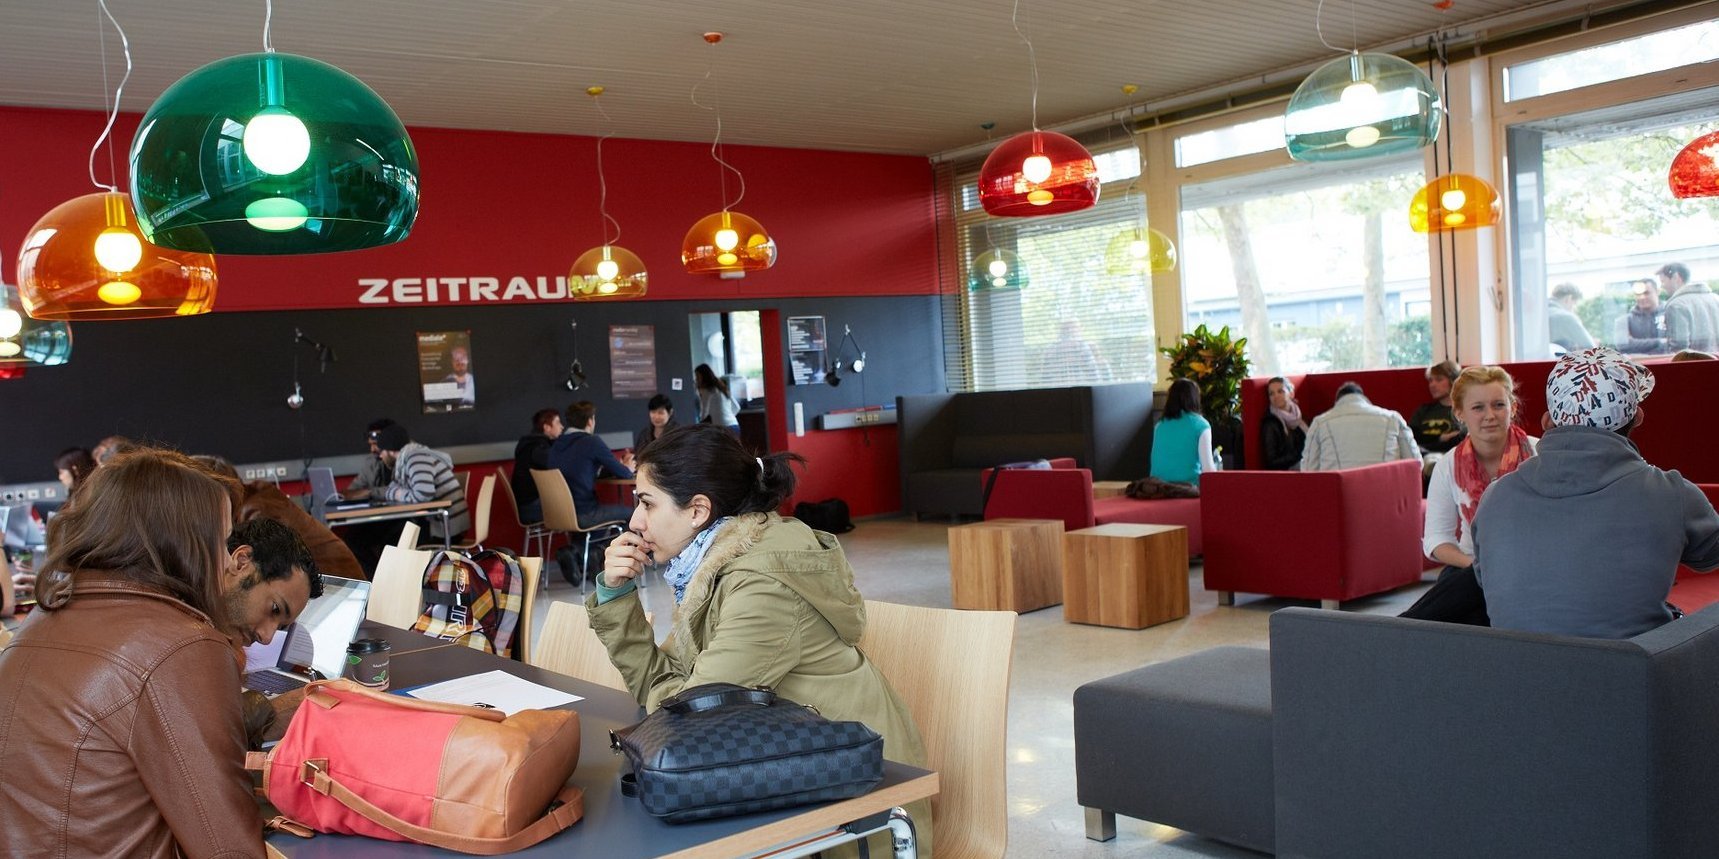 Studentisches Café "Zeitraum" in Dieburg